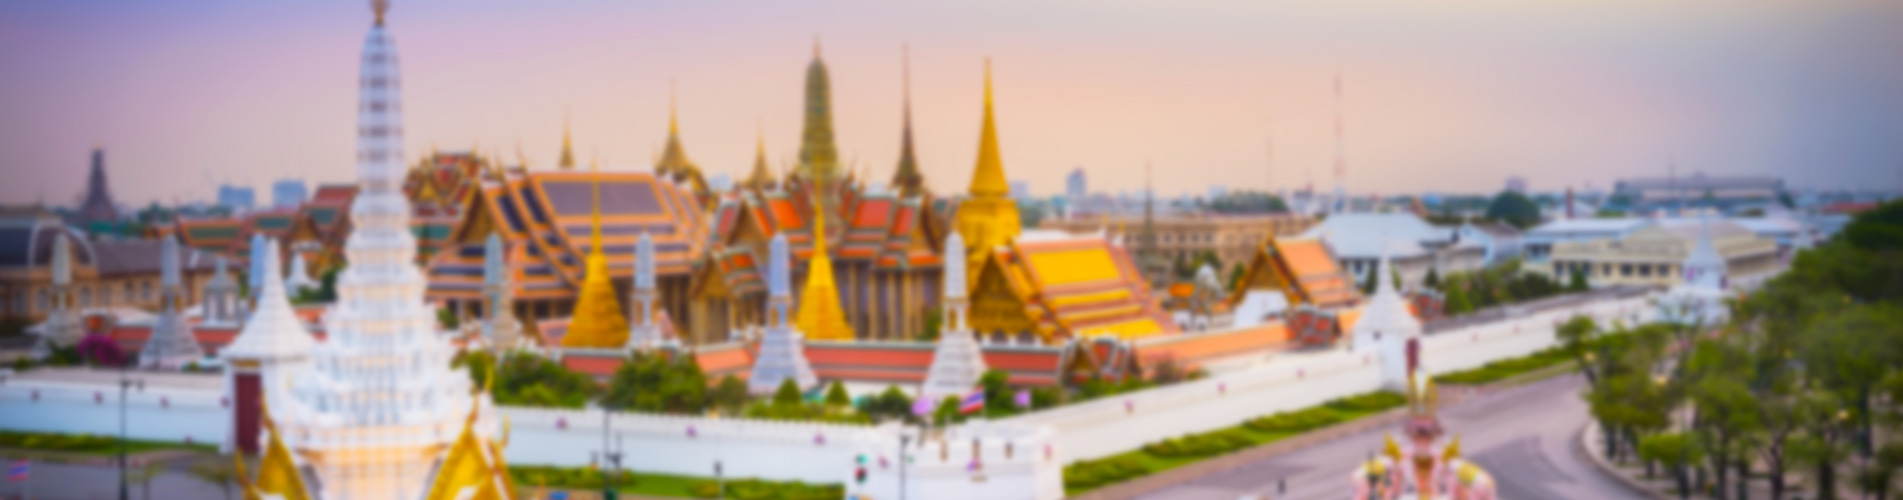 【預留機位】 五一假期泰國航空 - 曼谷來回機票